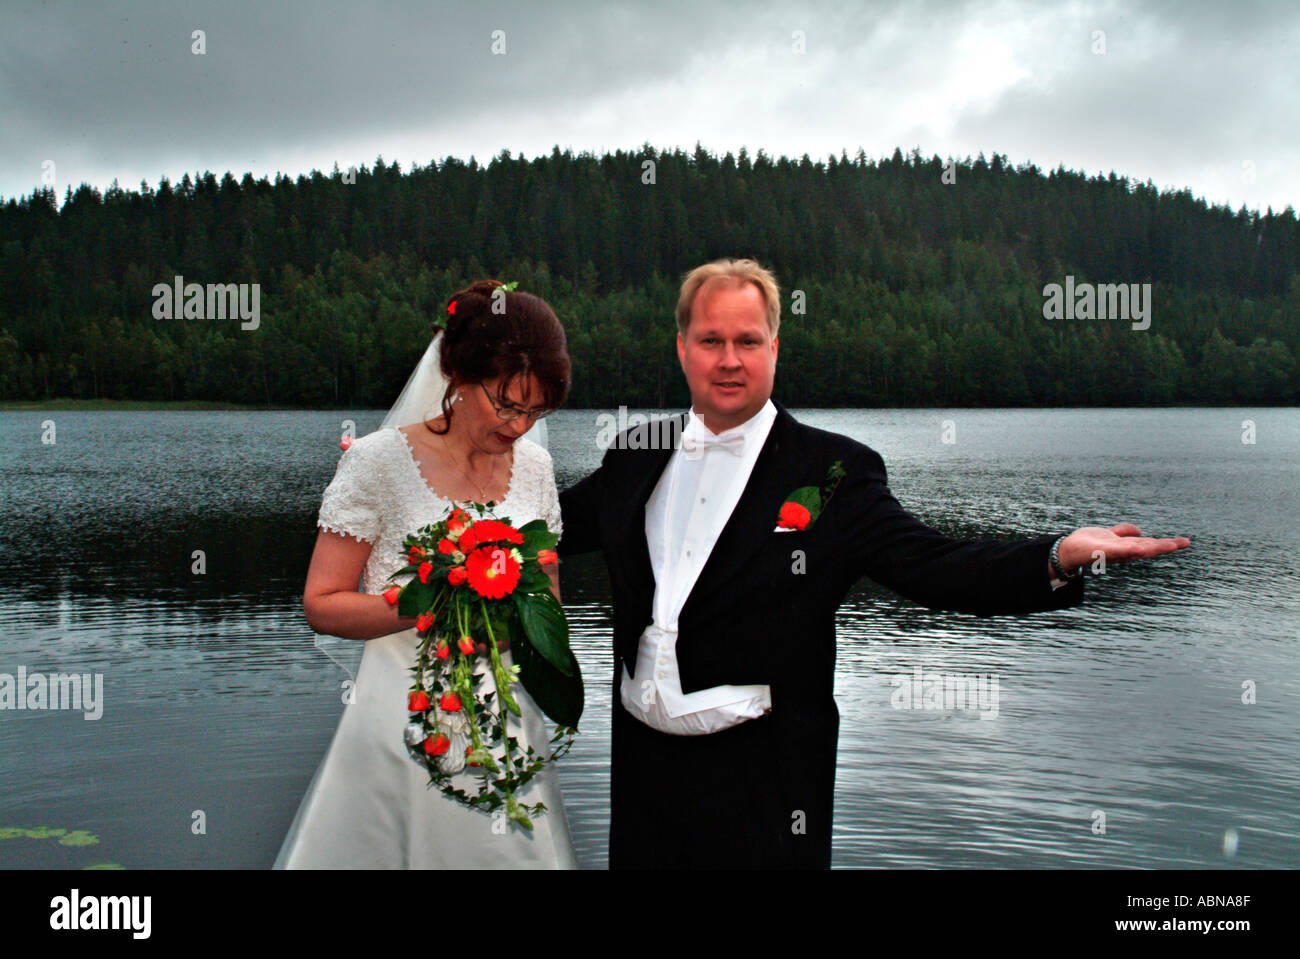 bridal pair in rain at a lake MR Stock Photo